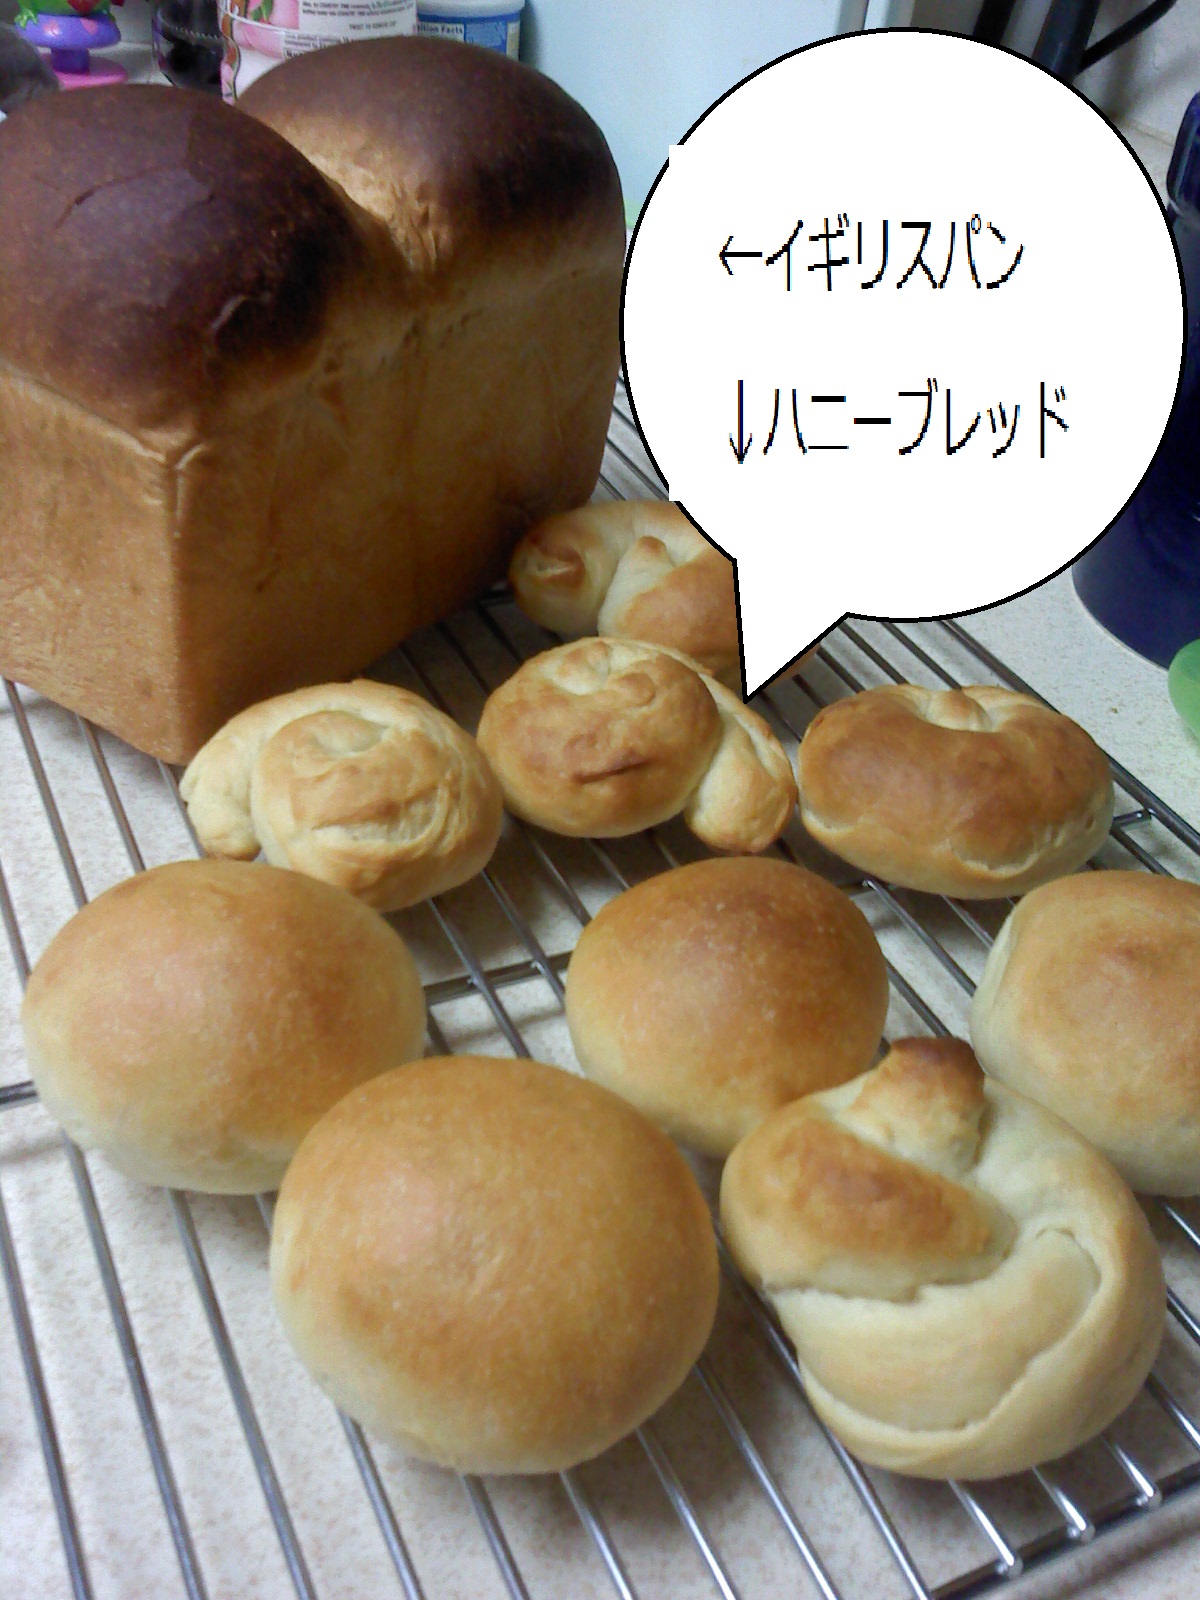 イギリスパンとハニーブレッド_f0163147_191493.jpg